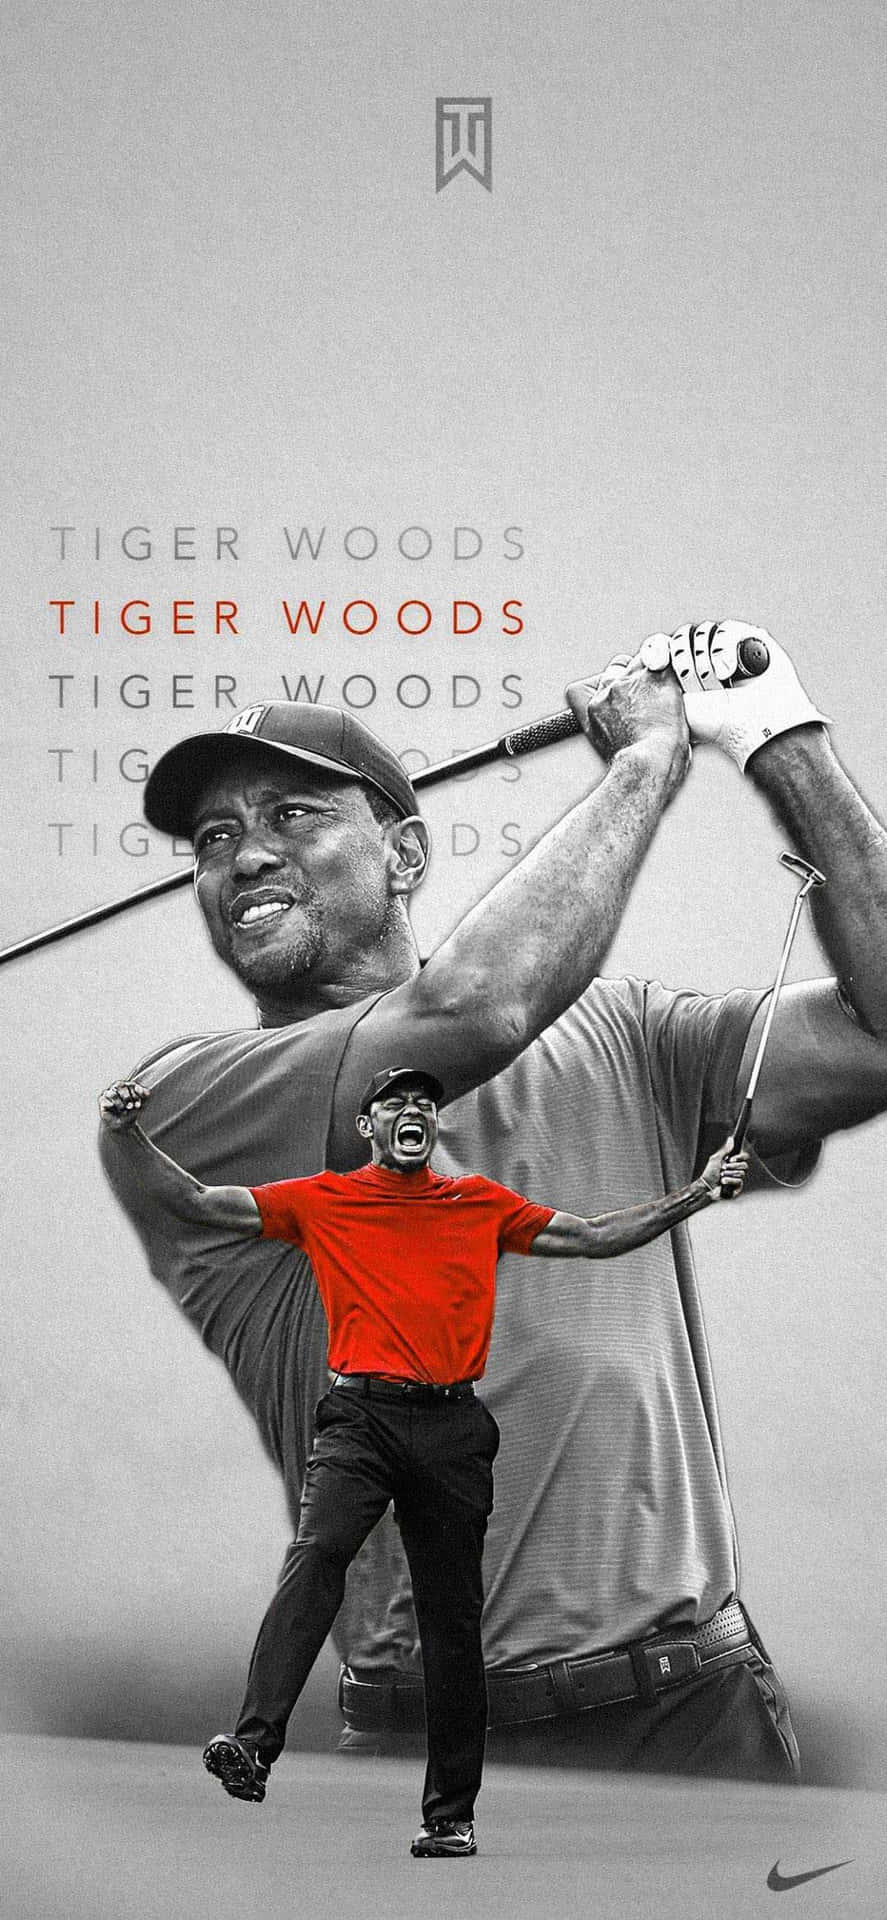 Wallpaperden Bästa Är Tiger Woods Iphone-bakgrundsbild. Wallpaper